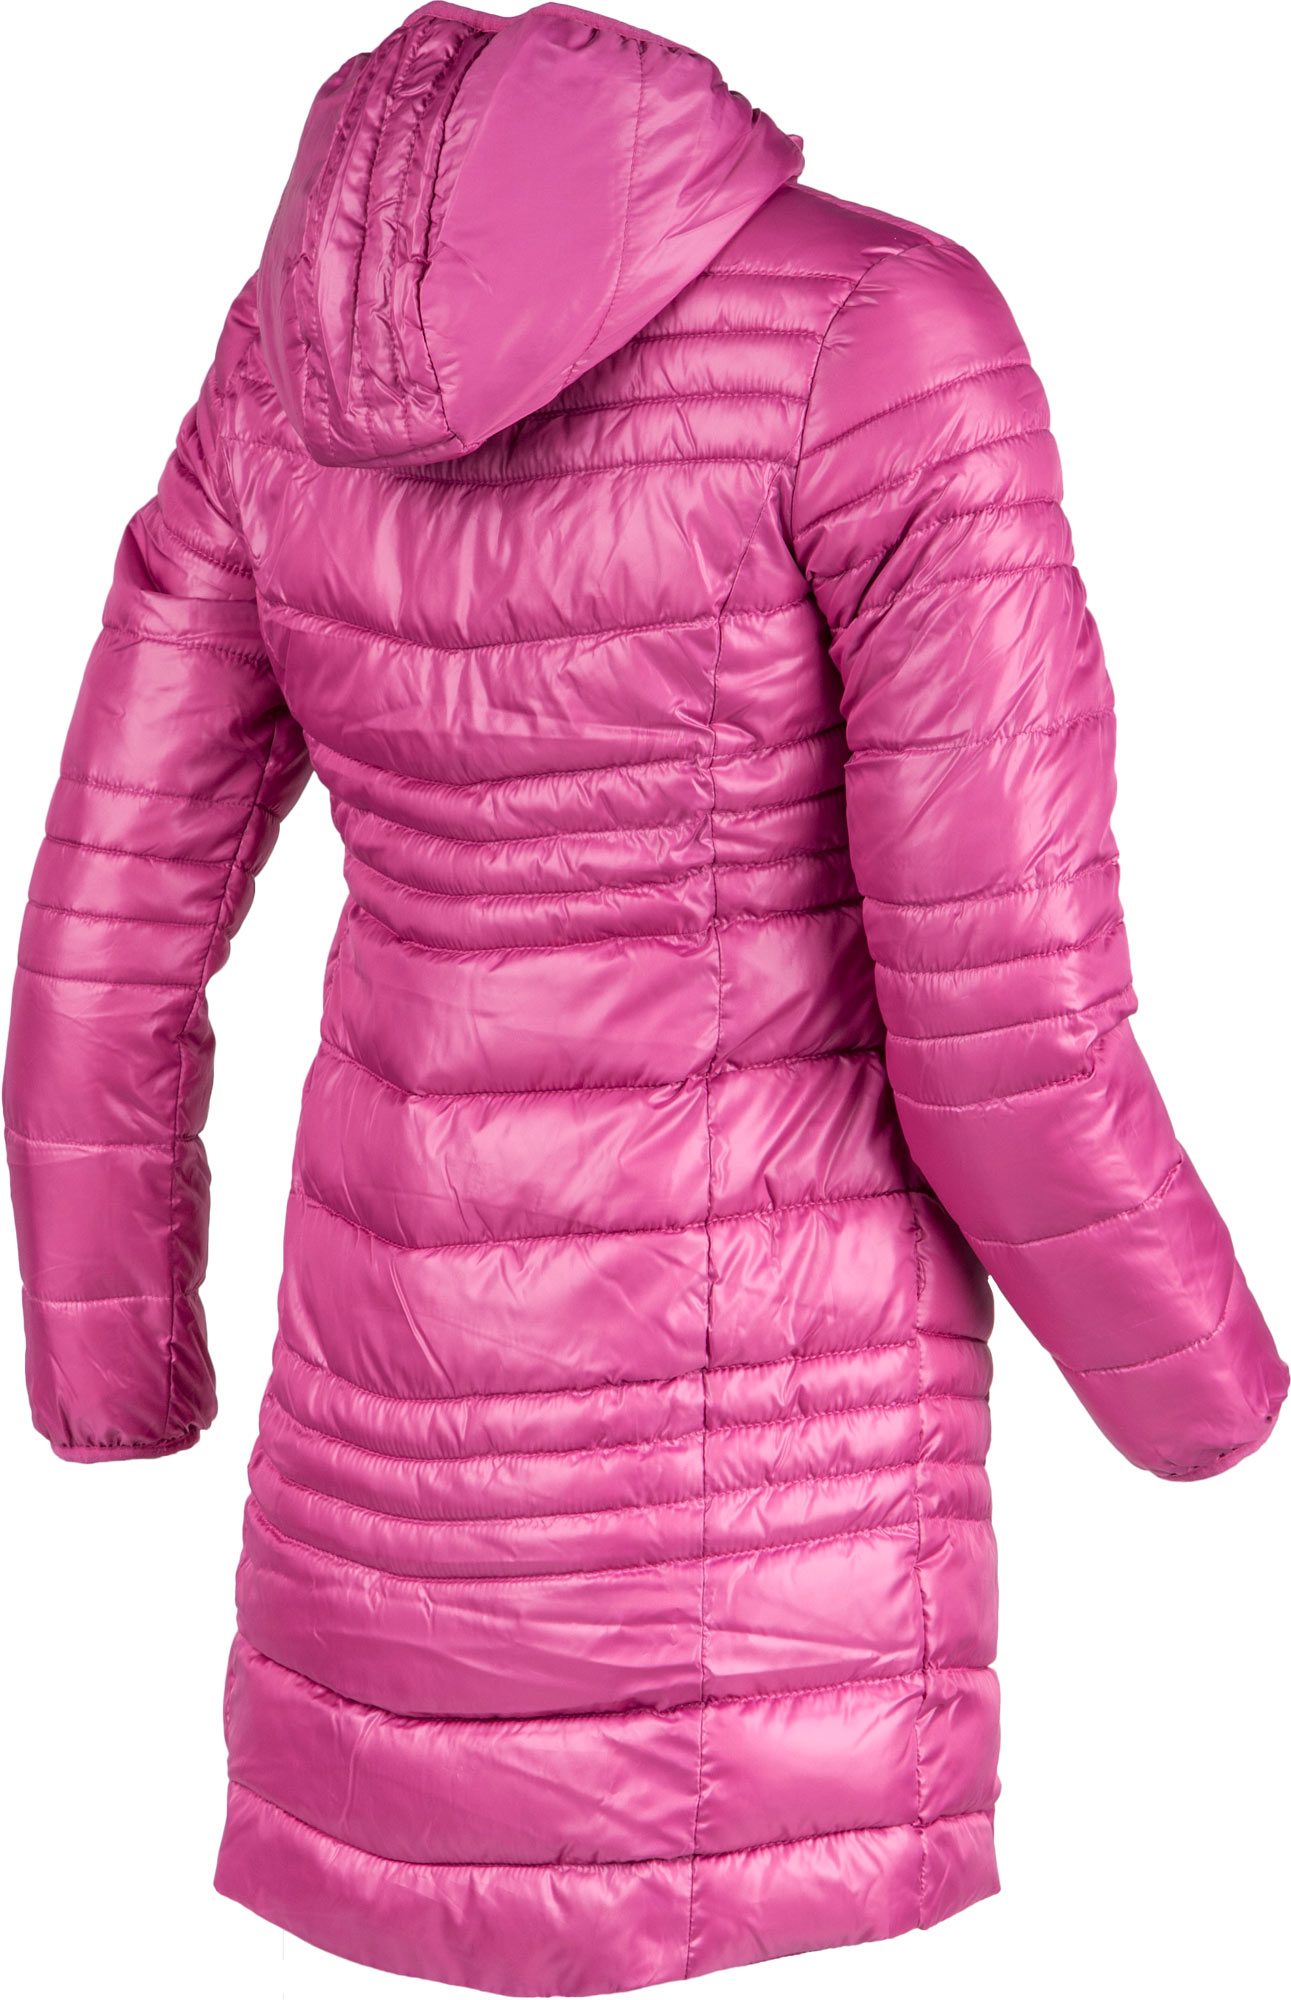 Detský zimný kabát